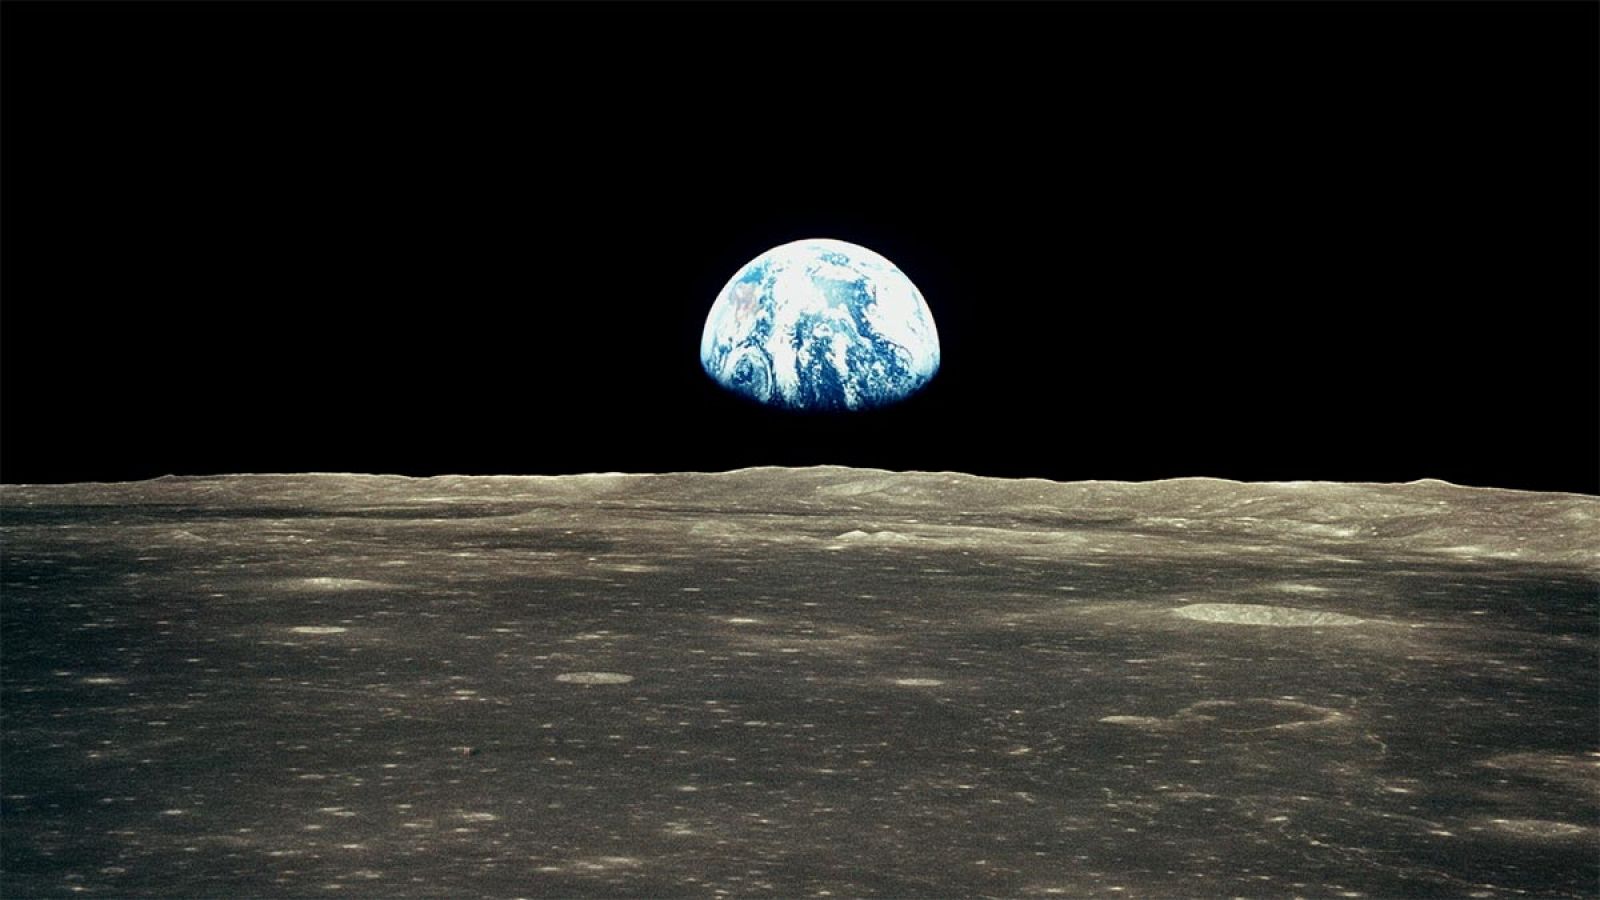 Imagen parcial de la Tierra, vista desde la superficie lunar.